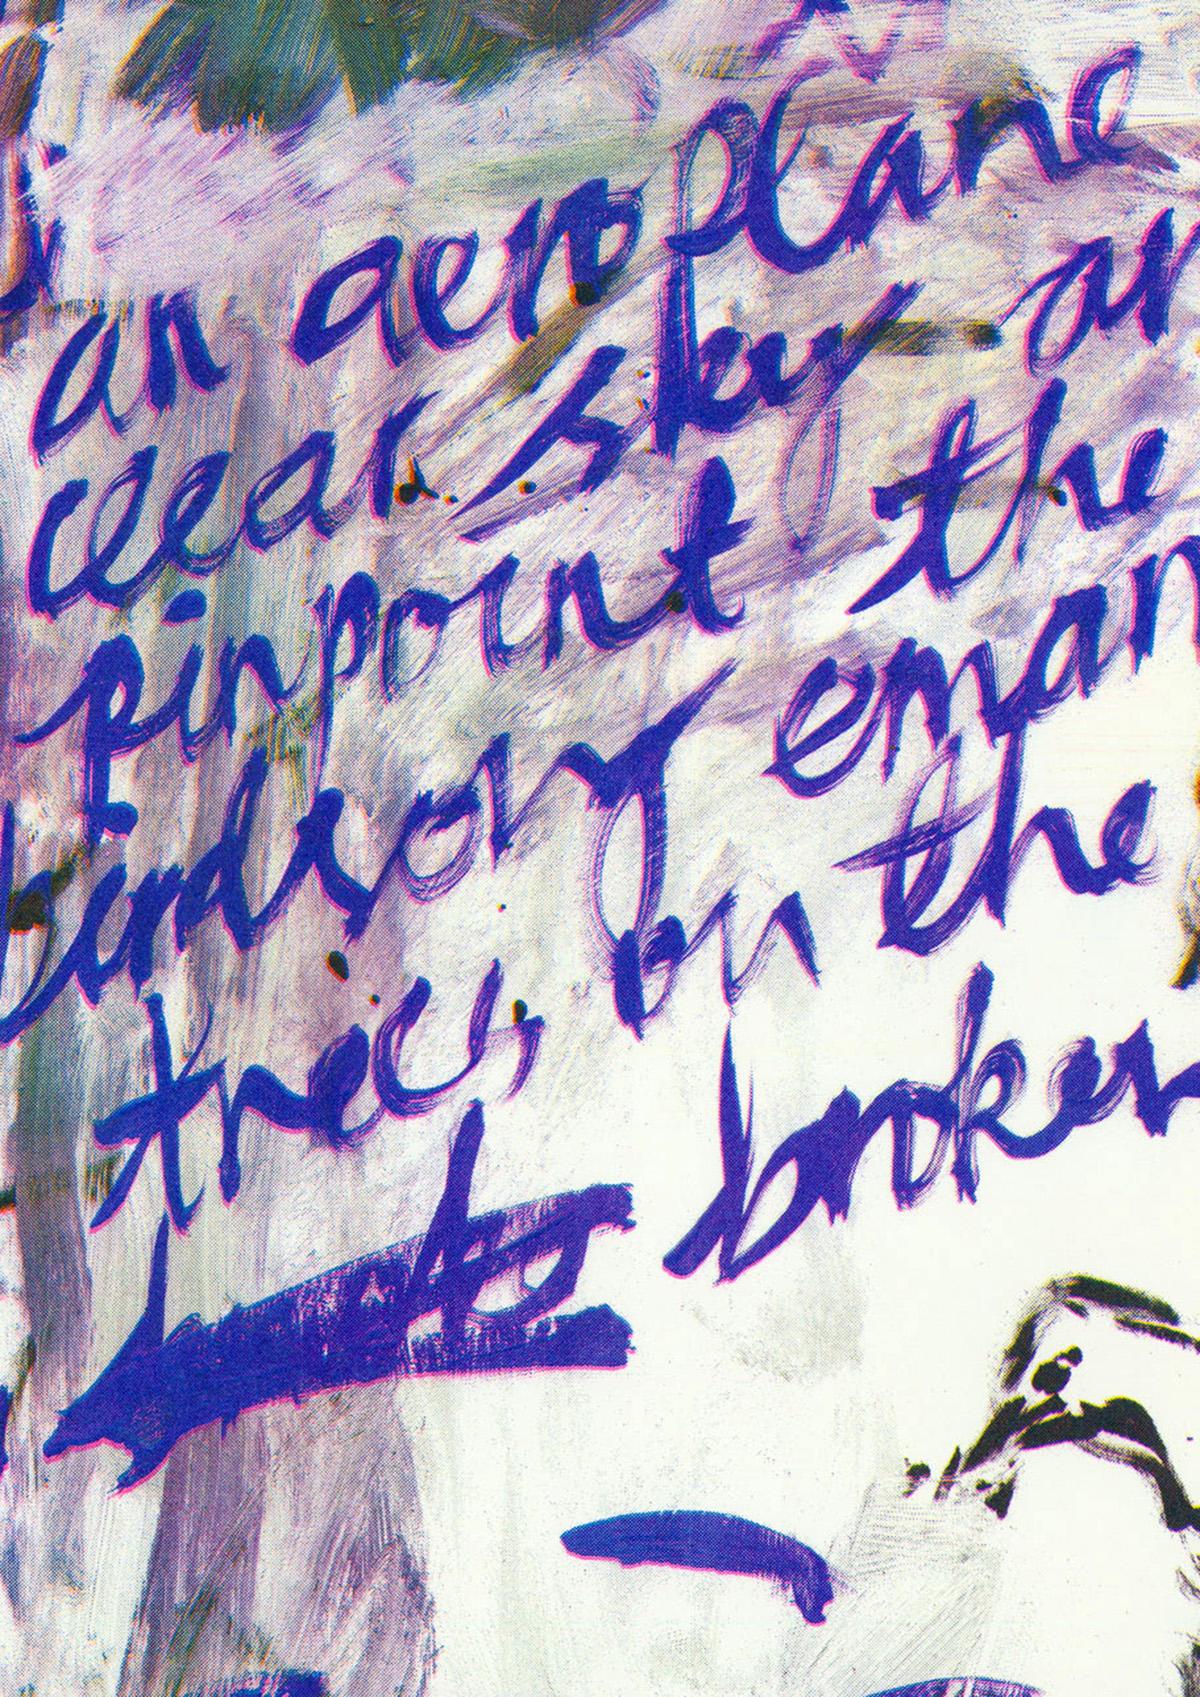 Kim Booker

Ende Sommer, 2013 (blau), 2021

Risographiedruck auf Olin naturweißem 170gsm Papier

42 x 29,7 cm (A3)

Auflage von 100 Stück

Signiert und nummeriert vom Künstler

Ungerahmt verkauft

Kim Bookers malerischer Risograph-Druck spiegelt die